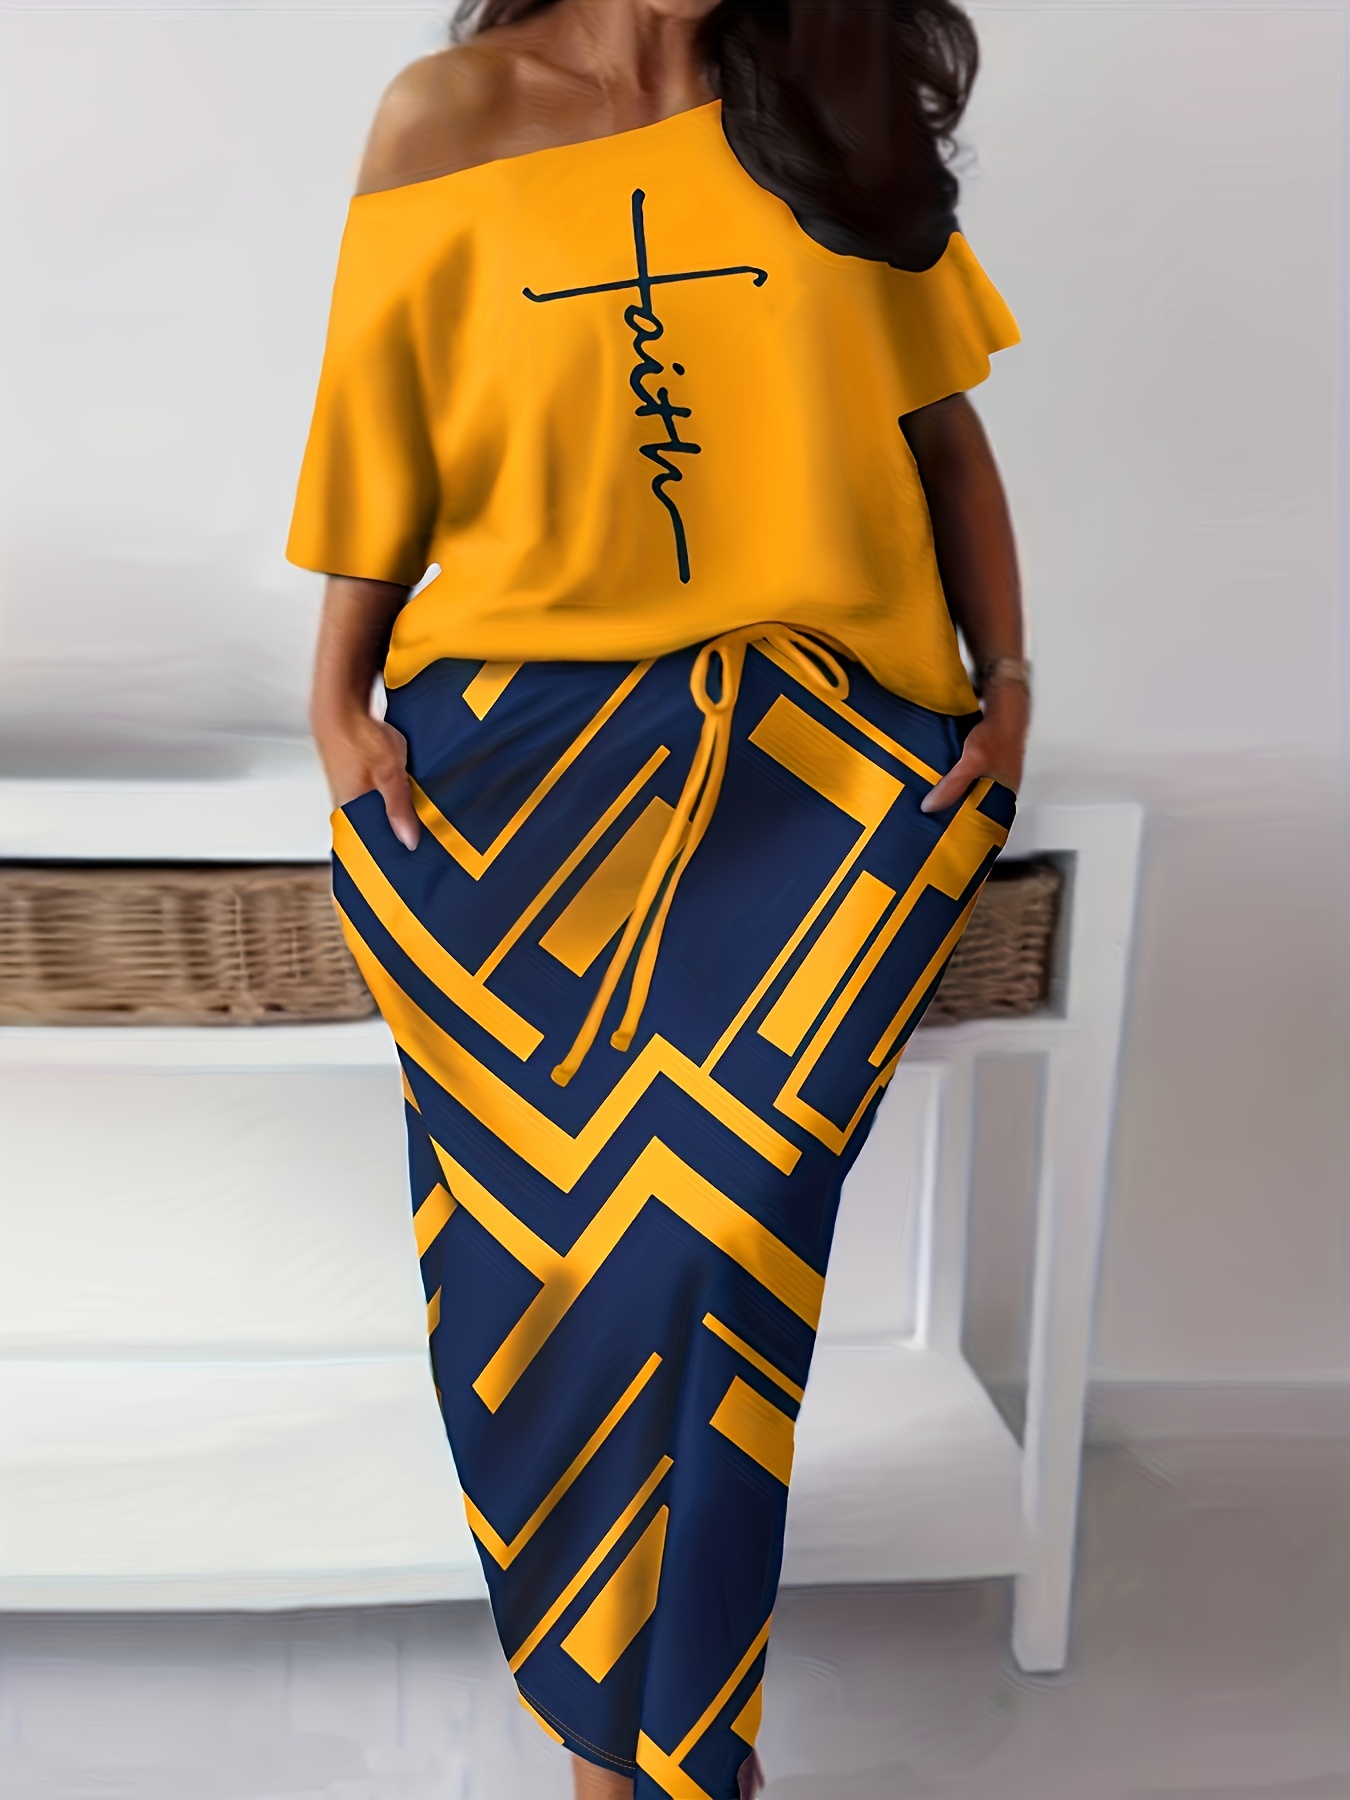 Falda corta en patrón de camuflaje amarillo y negro, minifalda con